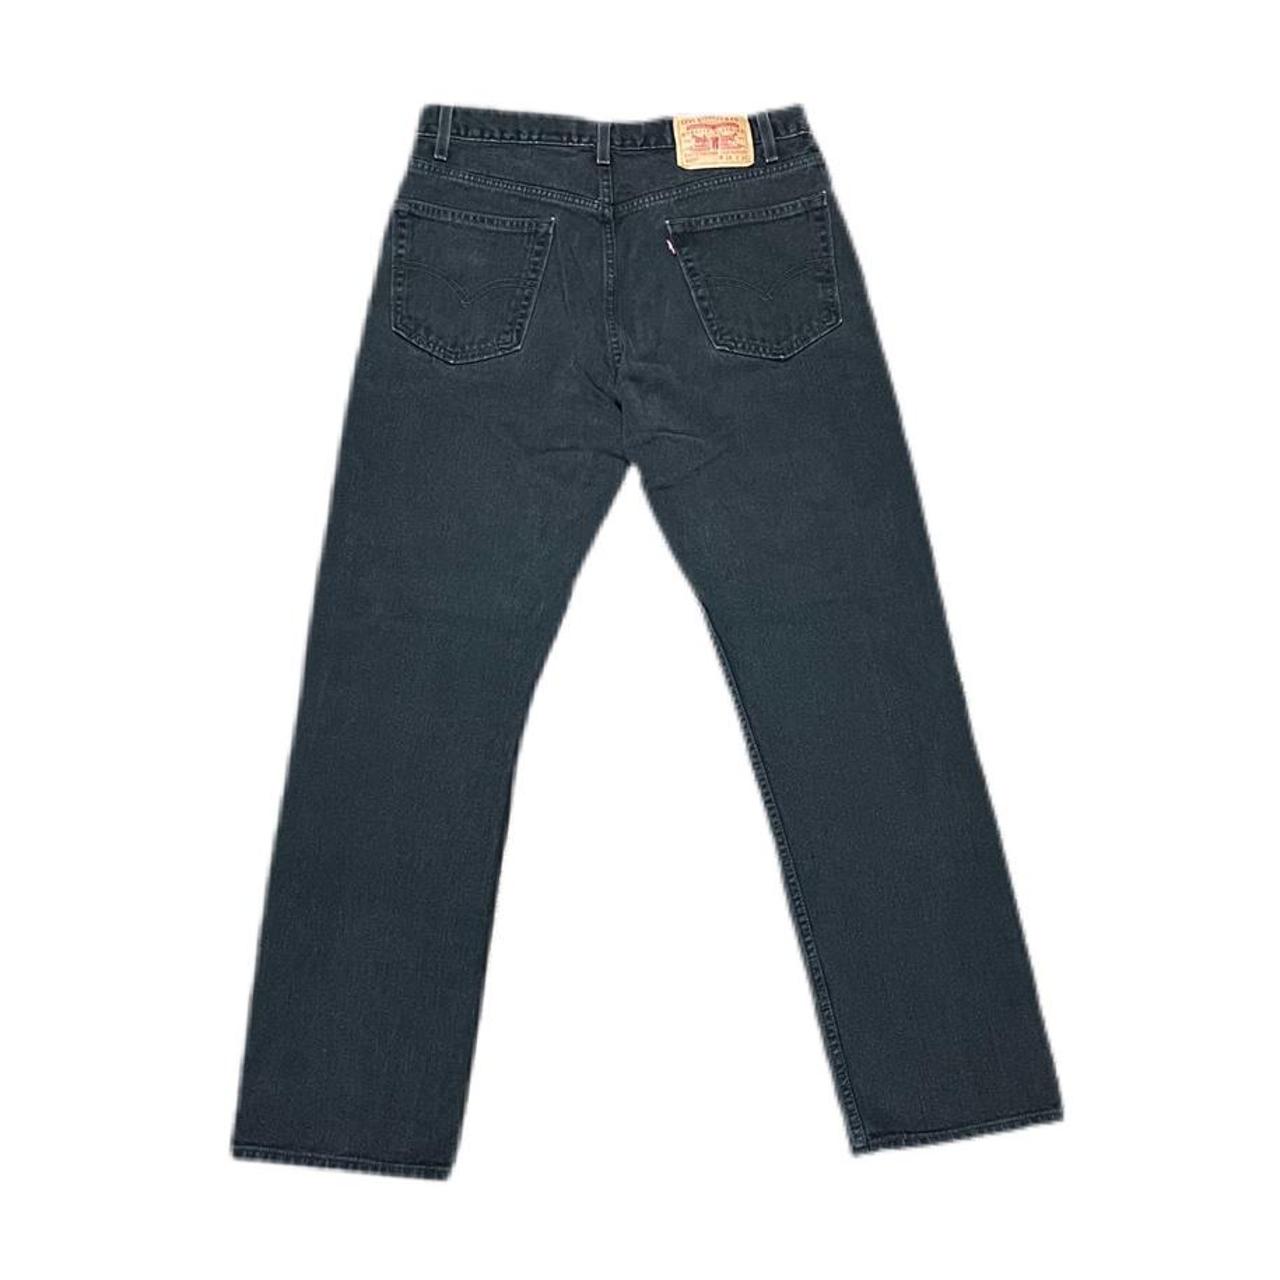 Vintage Levi’s 550 Black Denim Jeans Regular Fit... - Depop